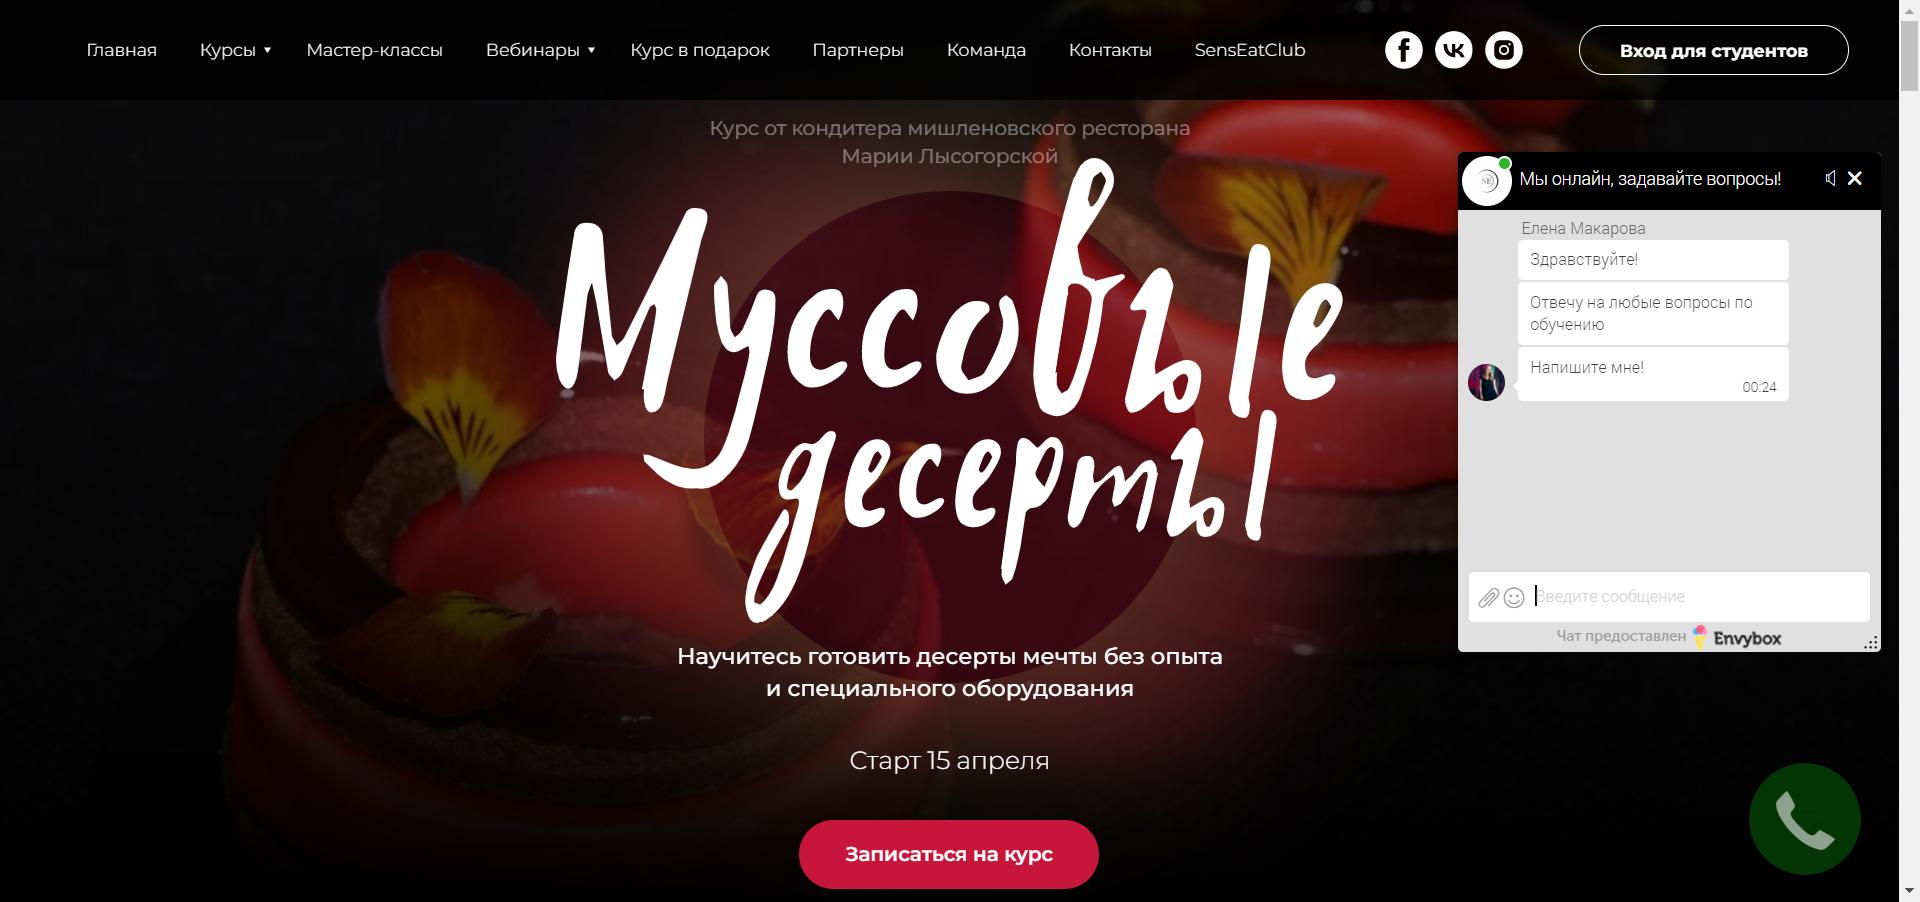 Онлайн-курсы кондитера, дистанционная школа кондитерского искусства для начинающих в Москве